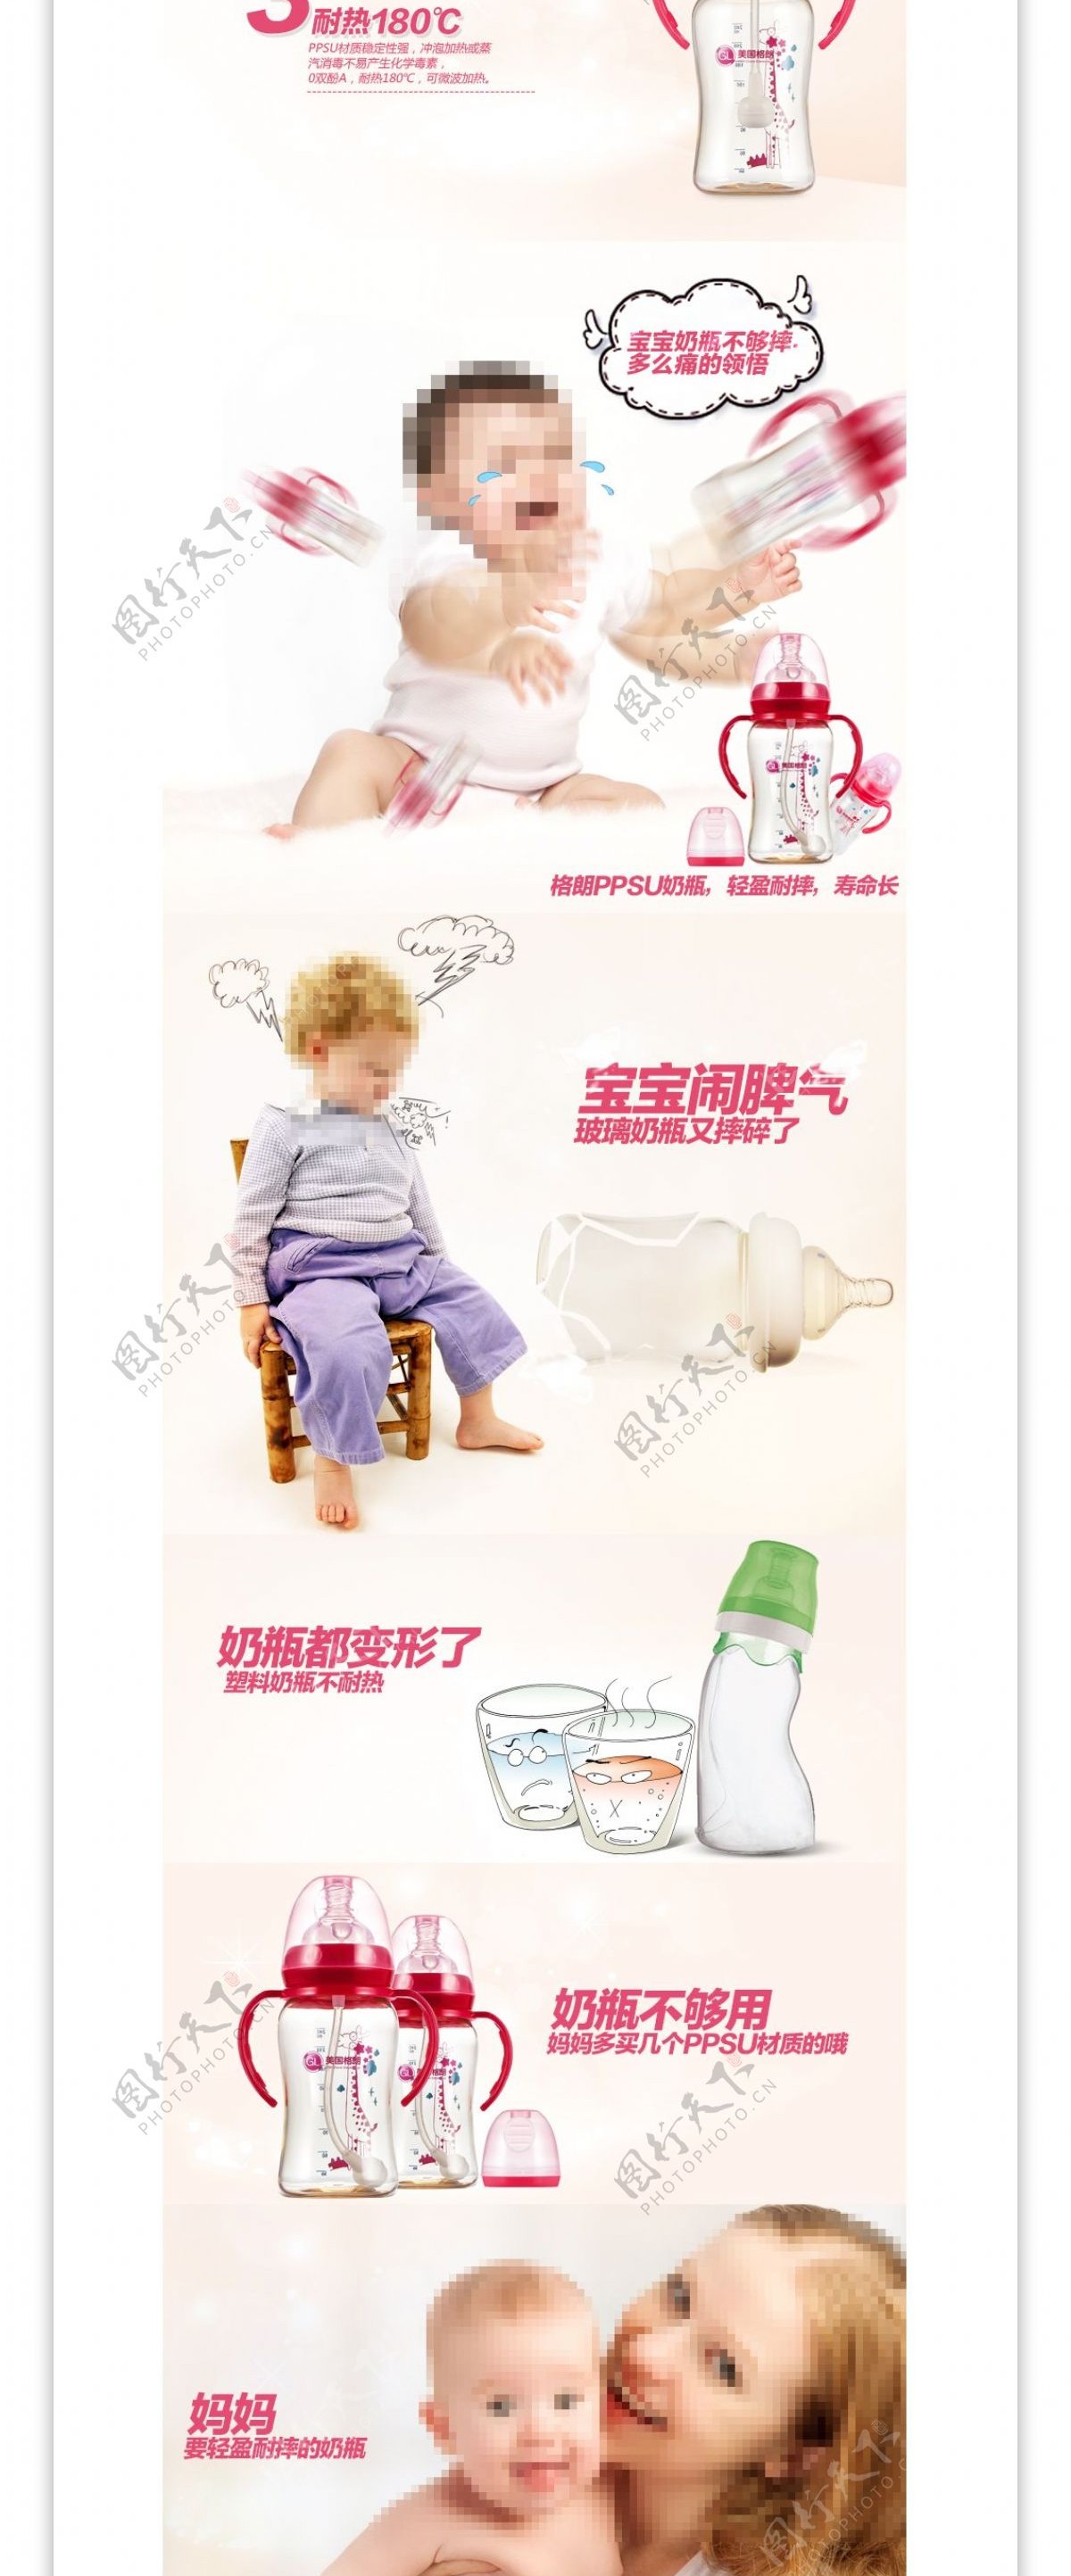 可爱清新婴儿奶瓶水瓶母婴用品淘宝详情模板